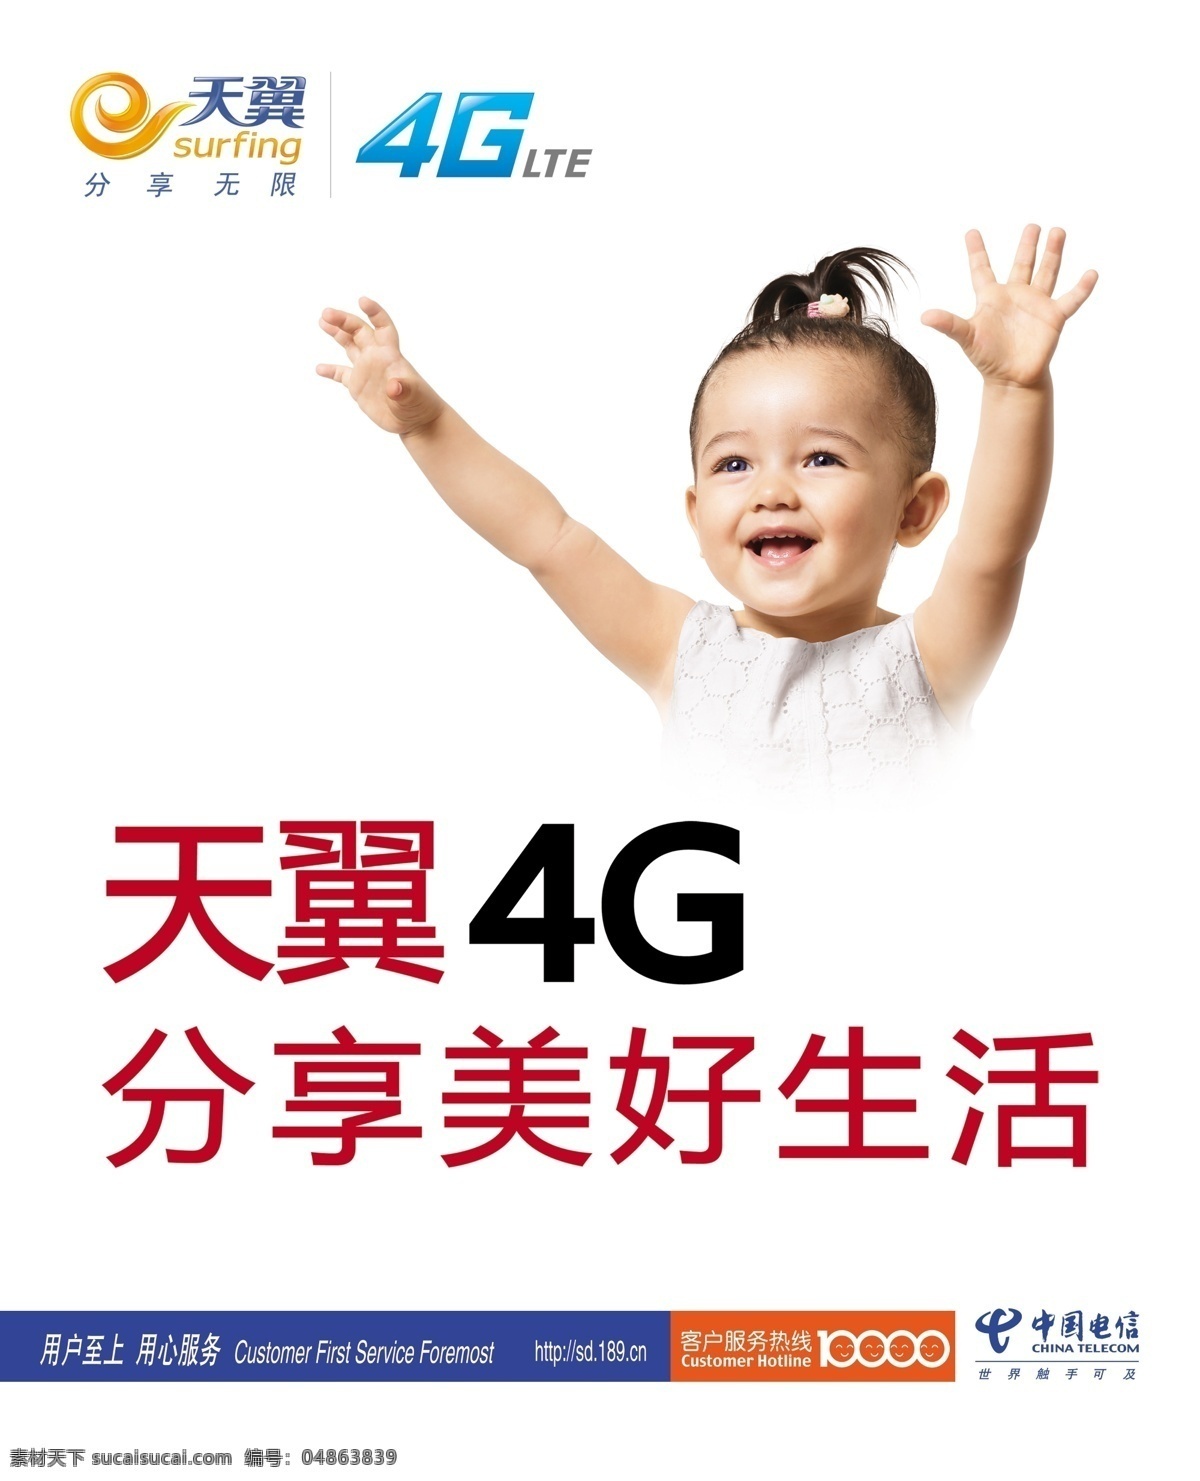 中国电信海报 中国电信 娃娃 海报 天翼 4g 客服热线 分层